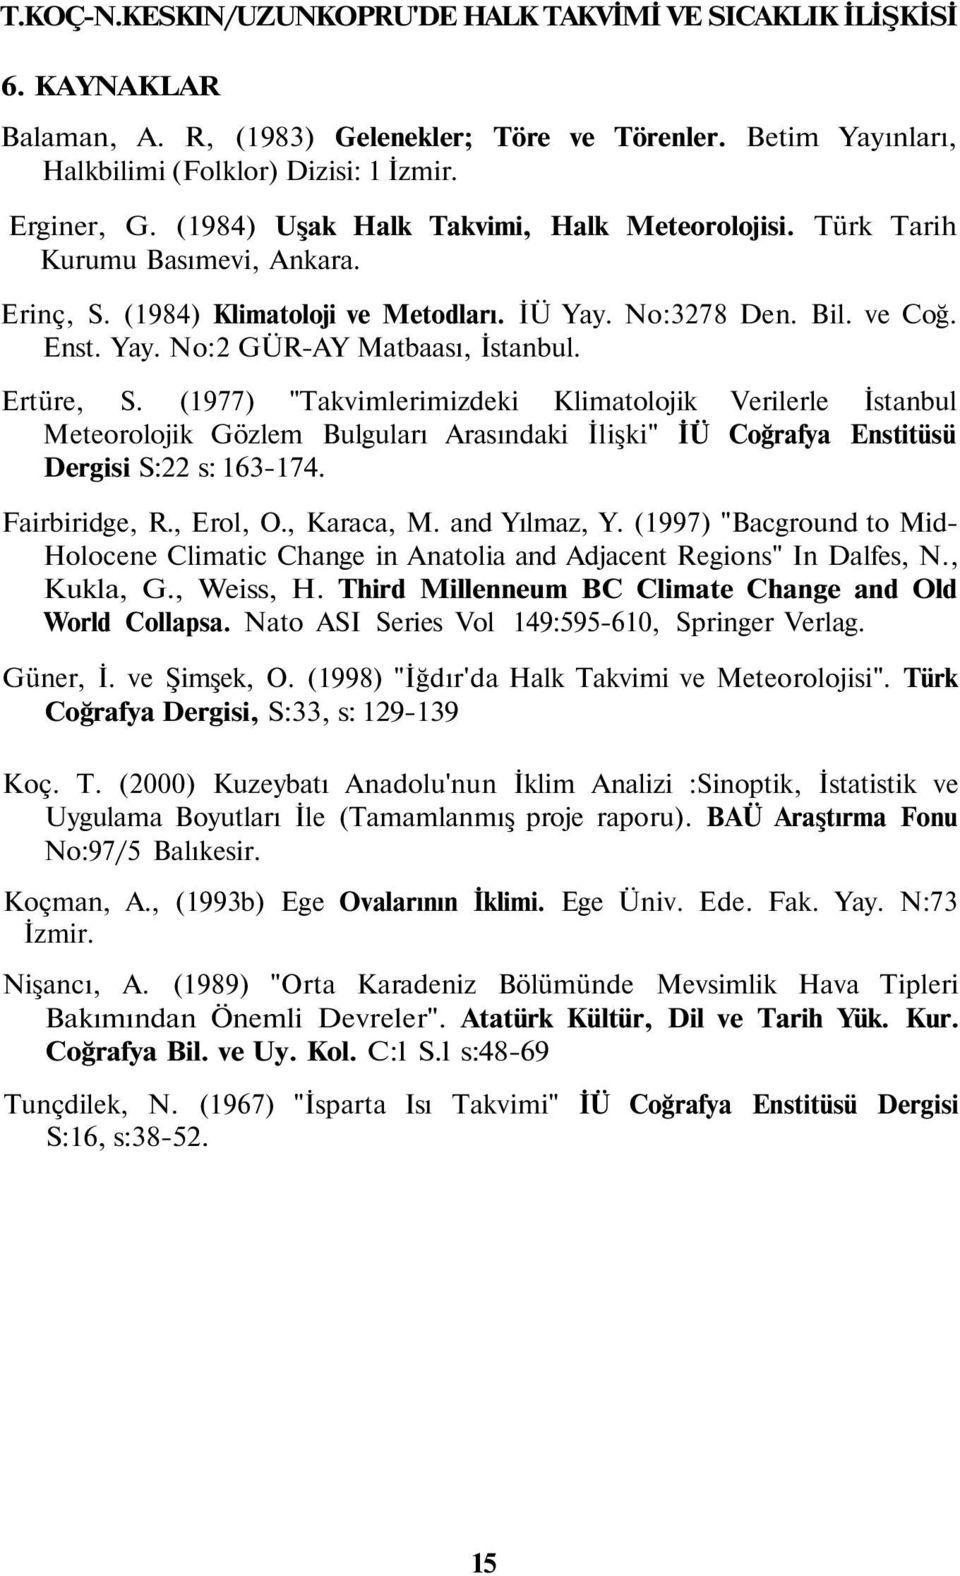 Ertüre, S. (1977) "Takvimlerimizdeki Klimatolojik Verilerle İstanbul Meteorolojik Gözlem Bulguları Arasındaki İlişki" İÜ Coğrafya Enstitüsü Dergisi S:22 s: 163-174. Fairbiridge, R., Erol, O.